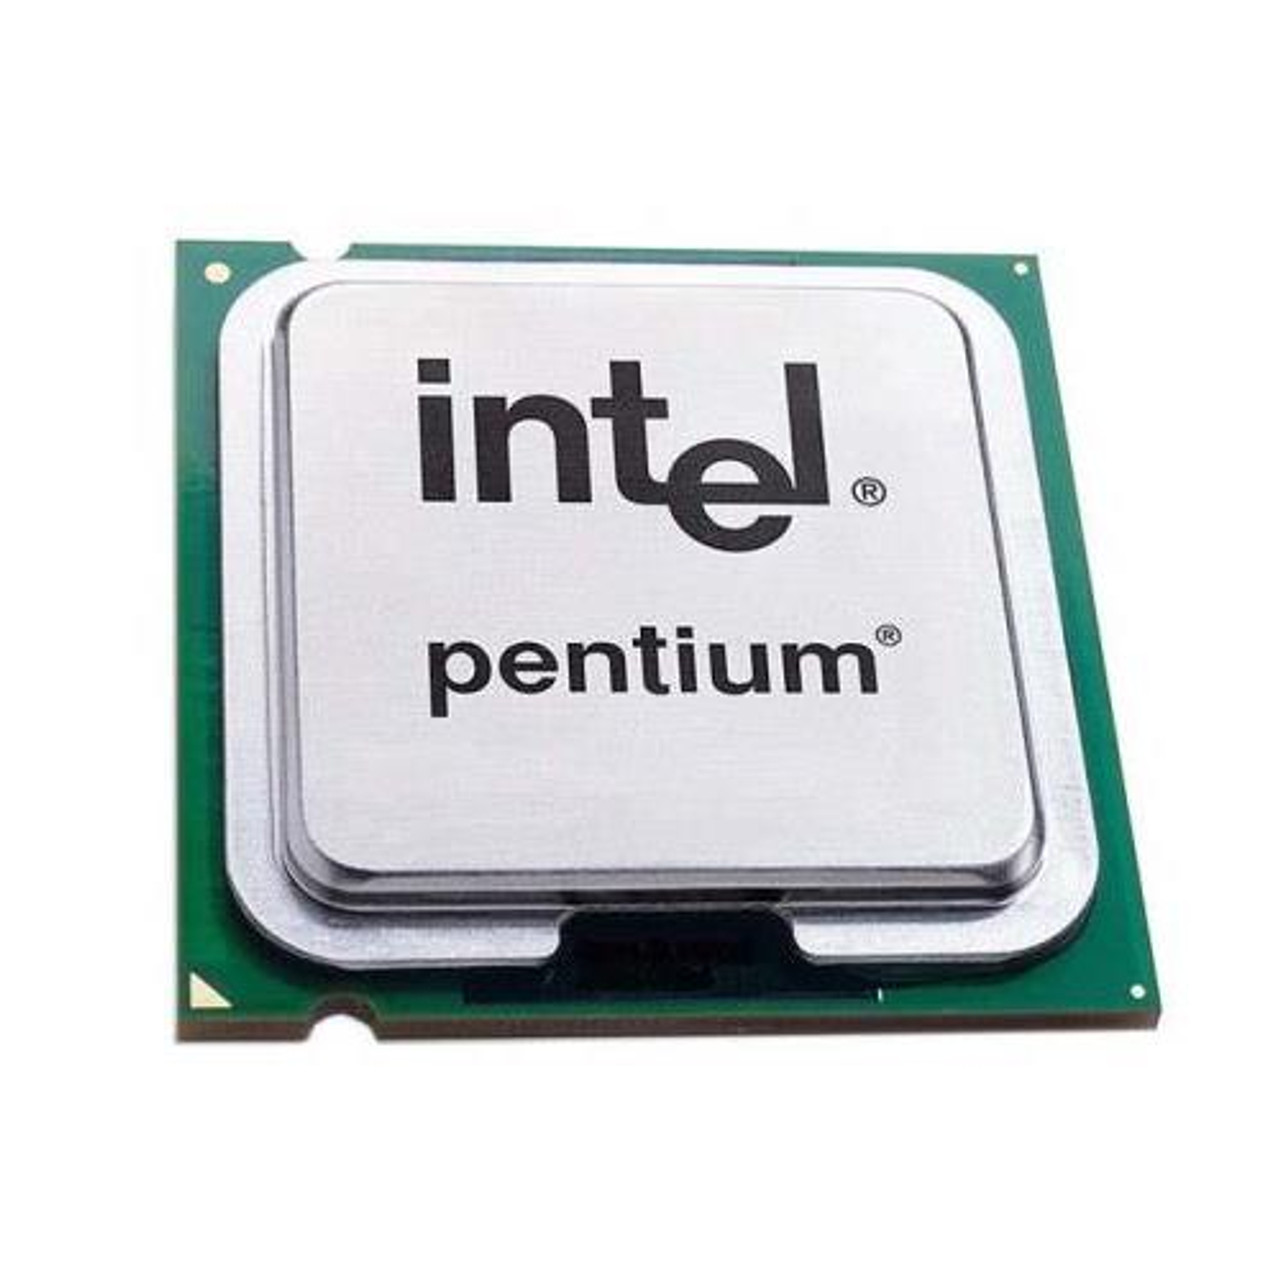 J3710 Intel Pentium 1.60 GHz Processor Unboxed OEM